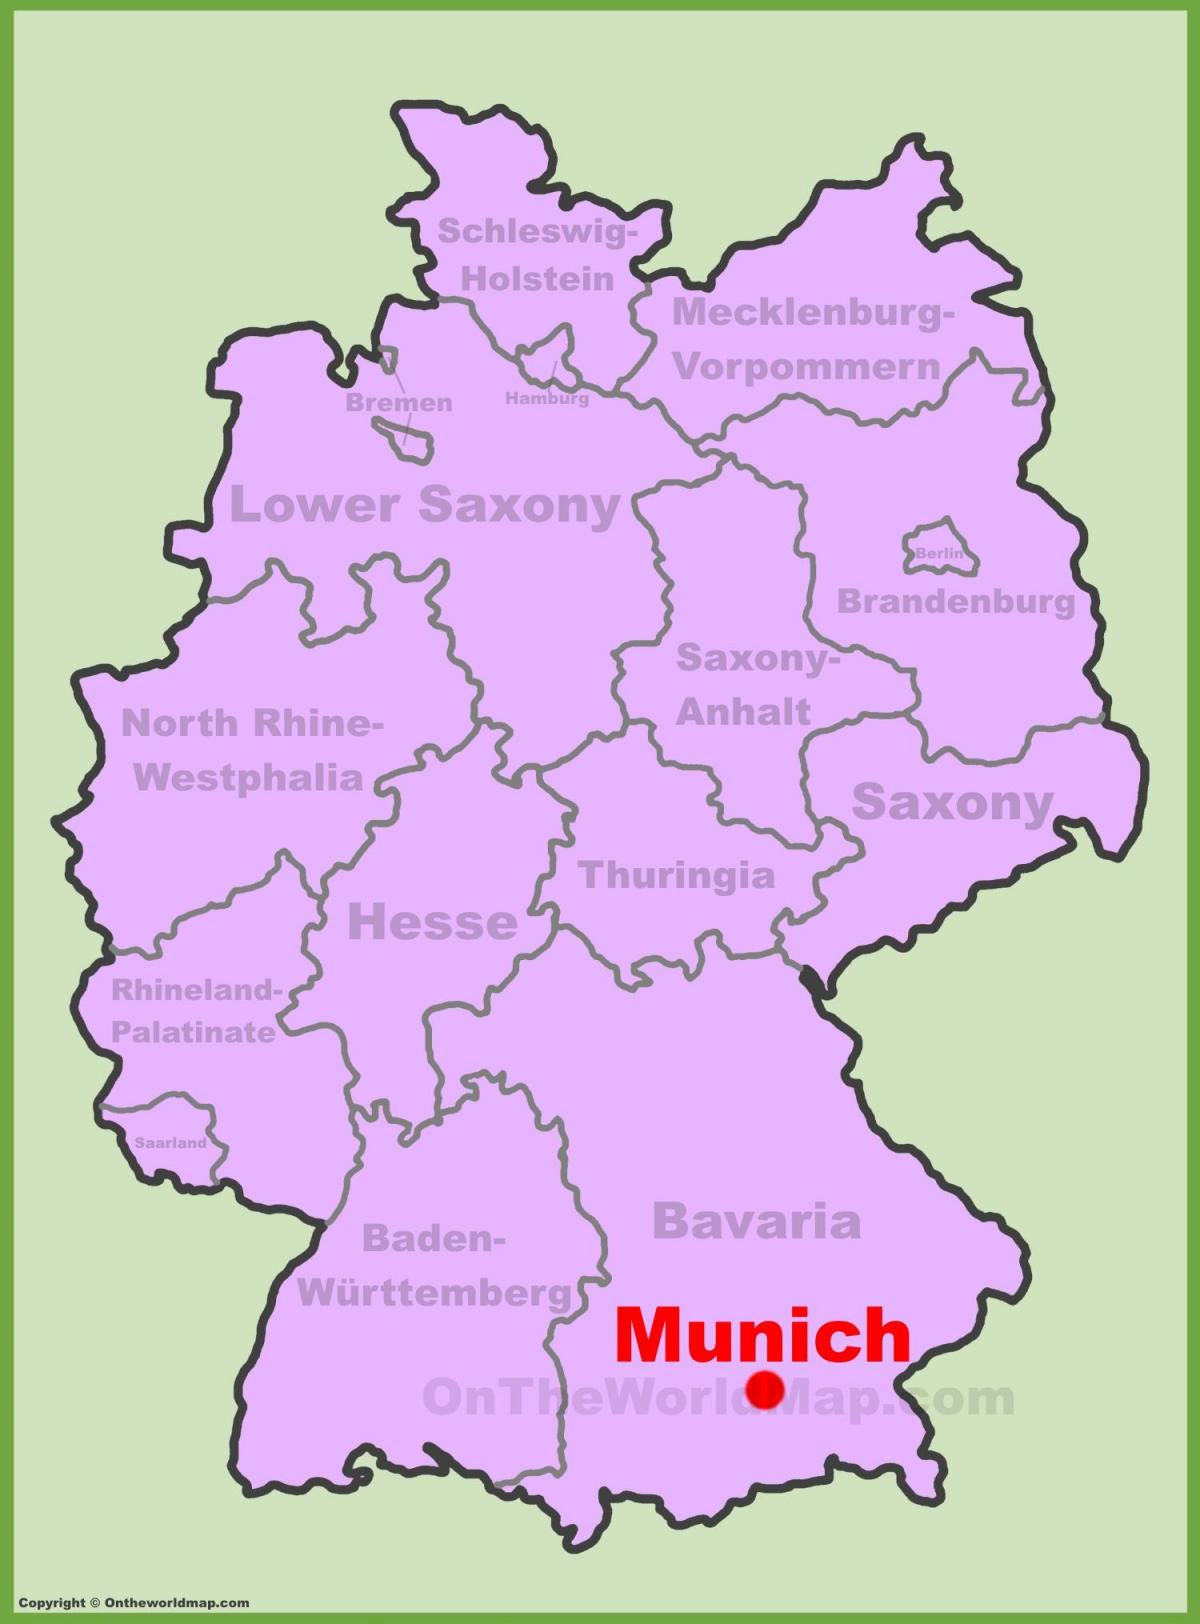 Zemljevid münchnu mesto